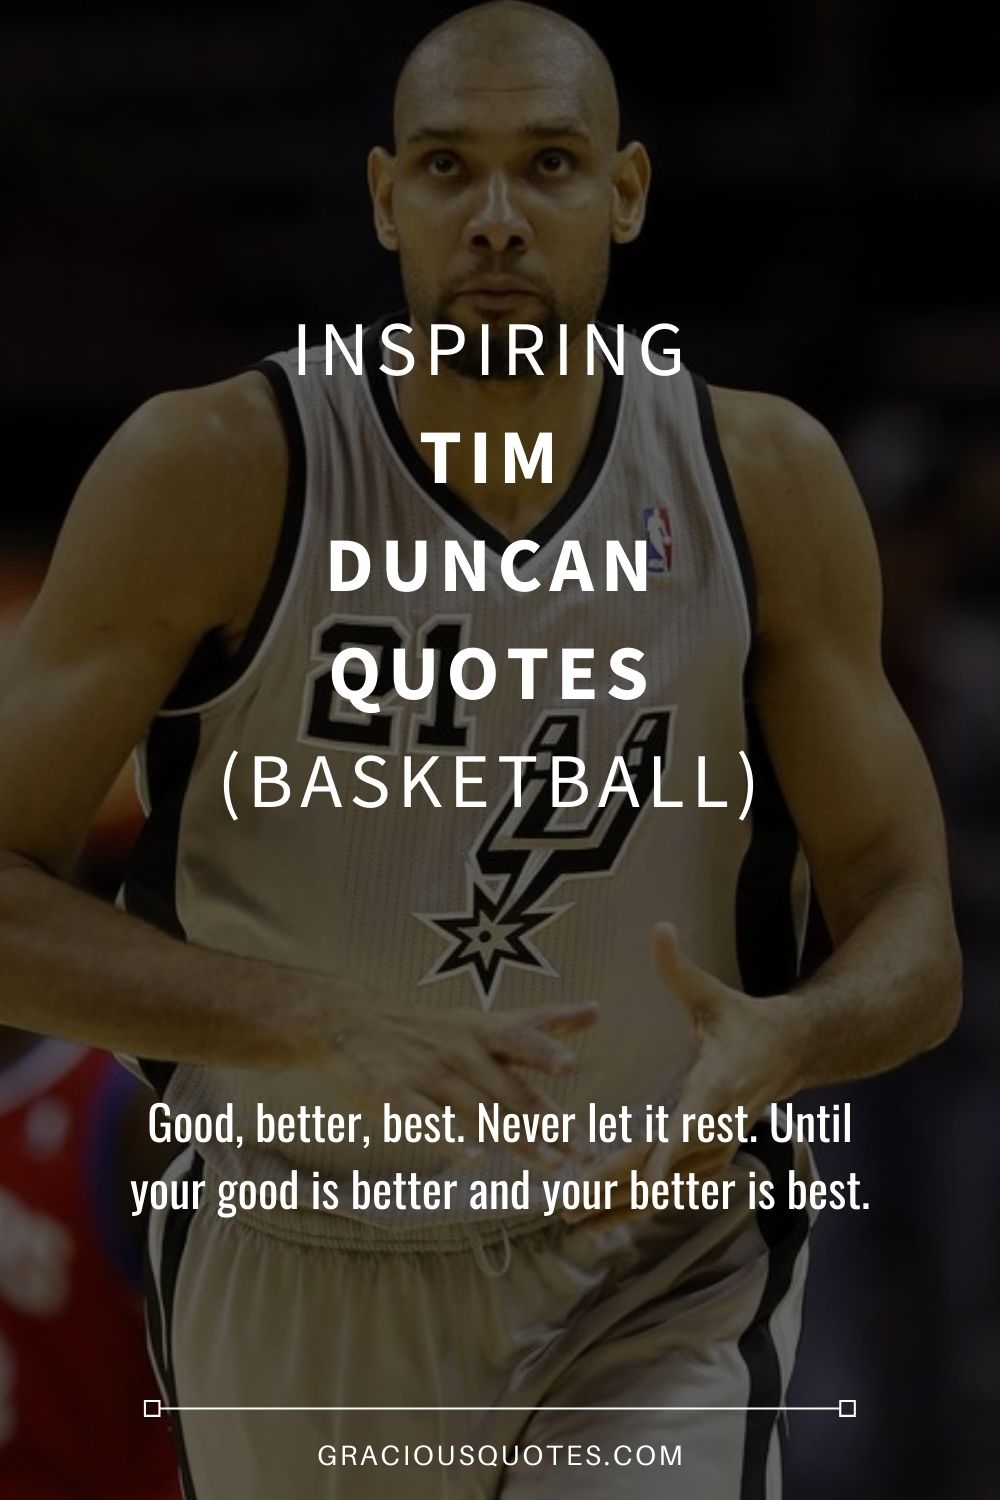 Inspiring Tim Duncan Quotes (BASKETBALL) - Gracious Quotes